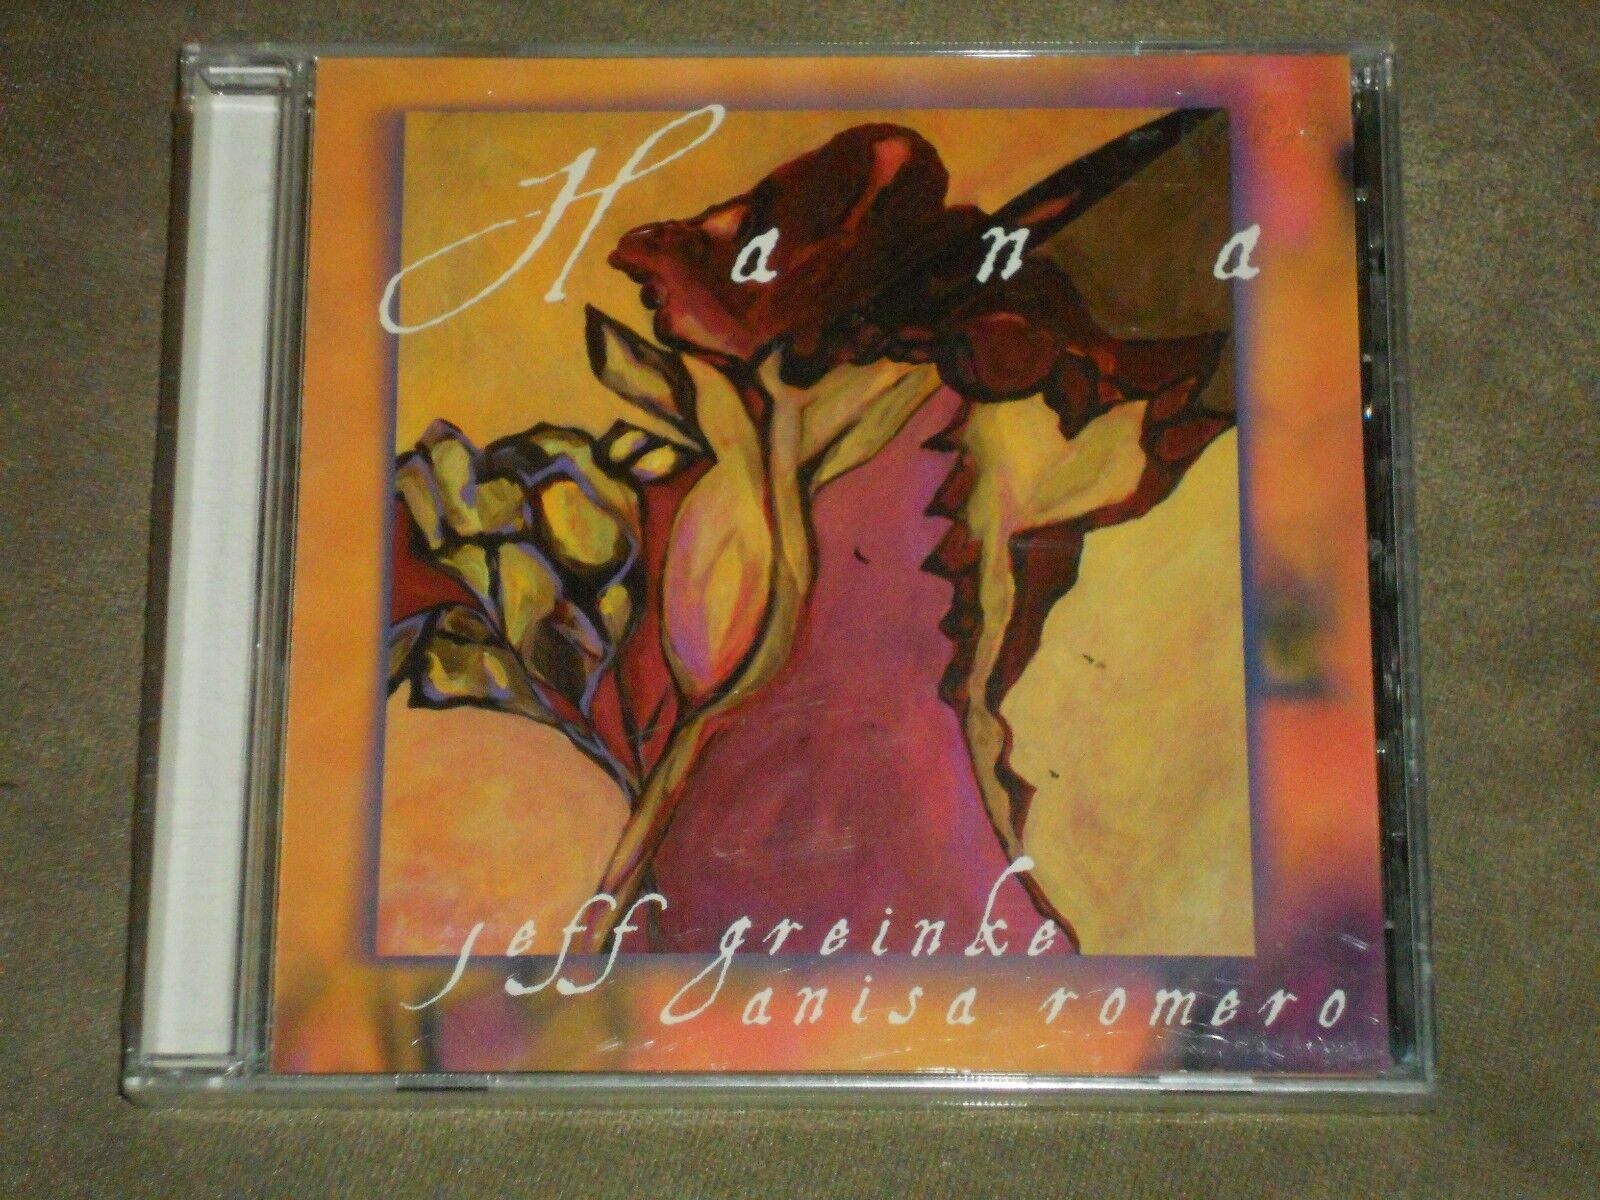 Hana by Jeff Greinke CD Nov 1999 Forst World Records